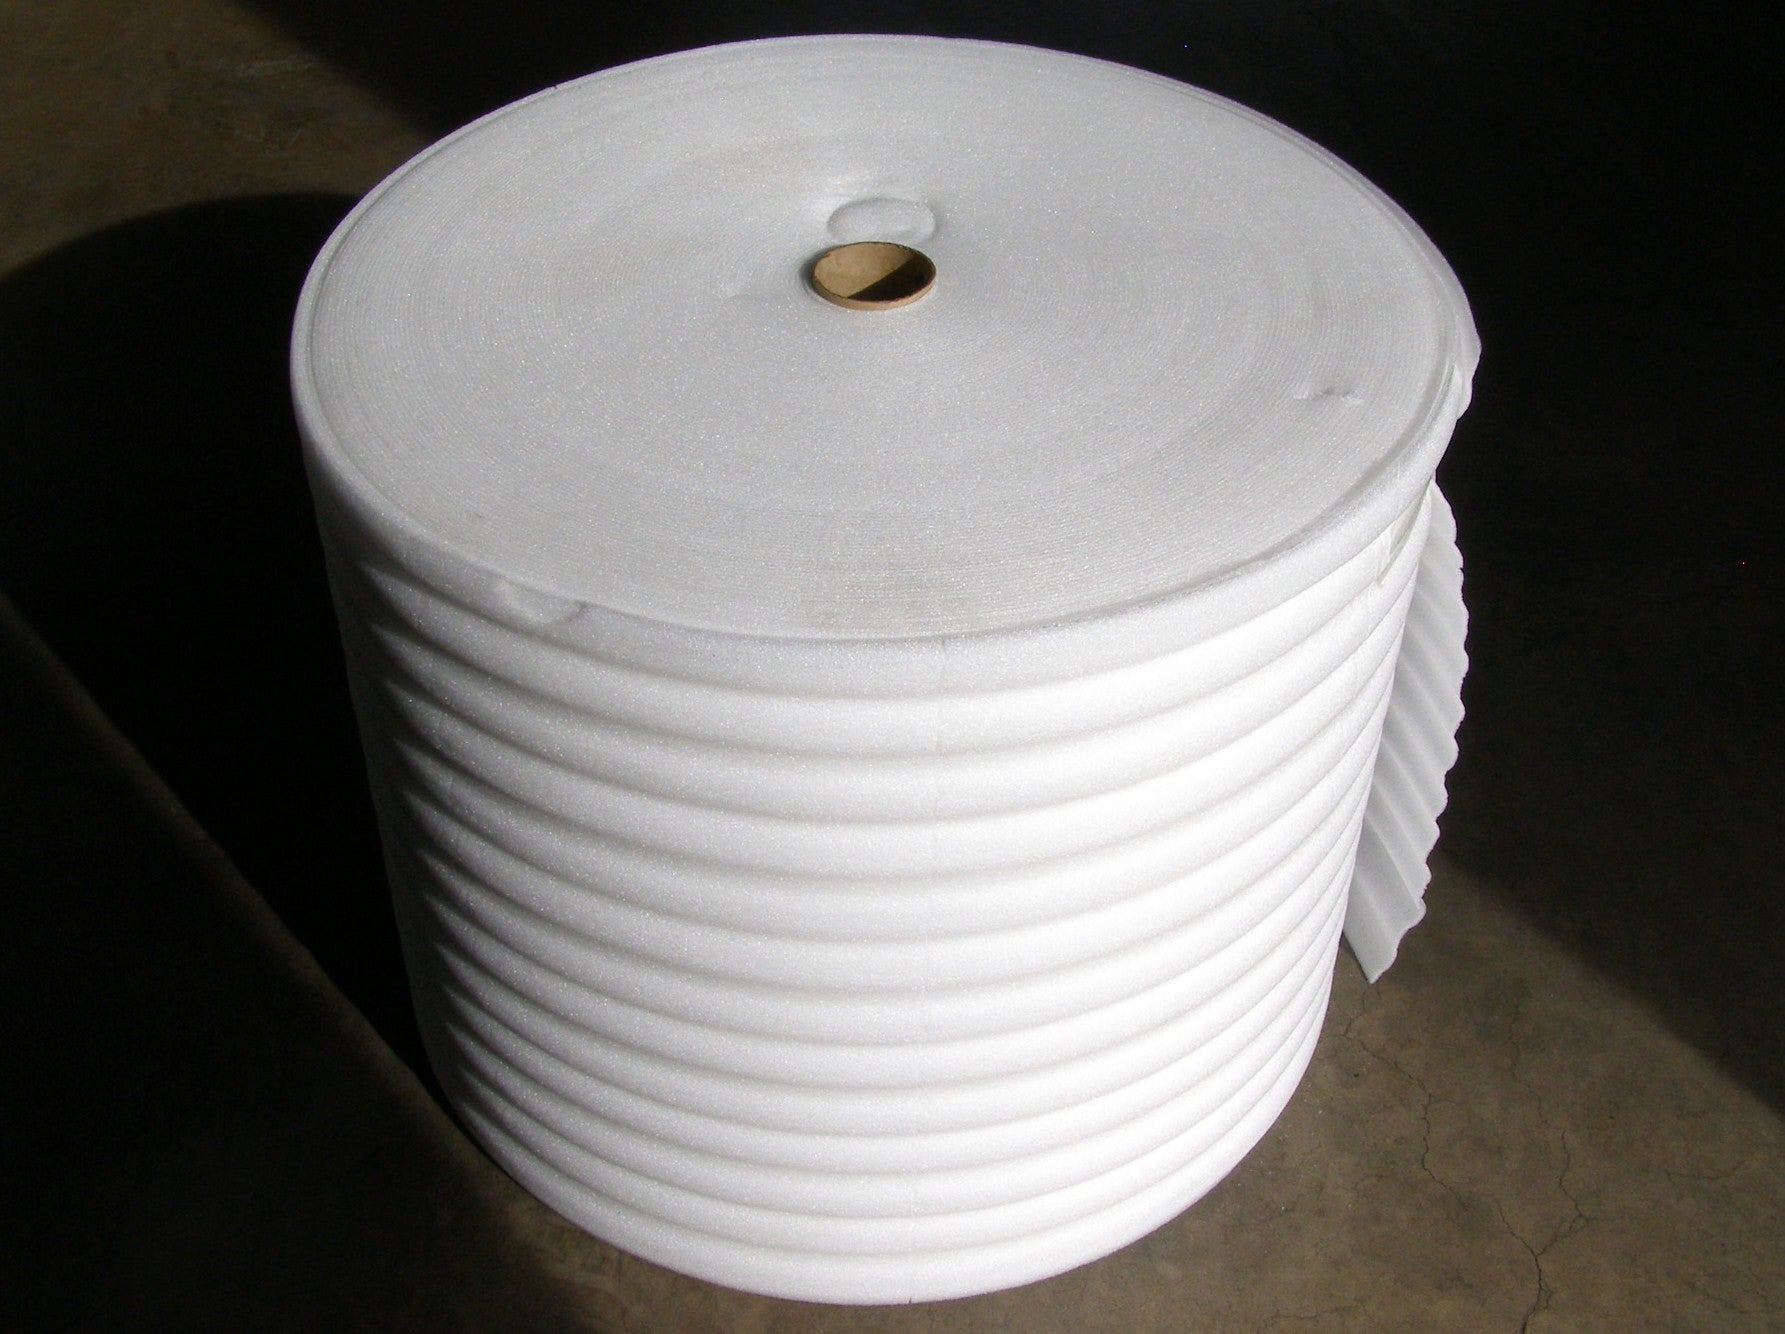 Packaging Foam Roll - 3/32 x 60 x 750', White